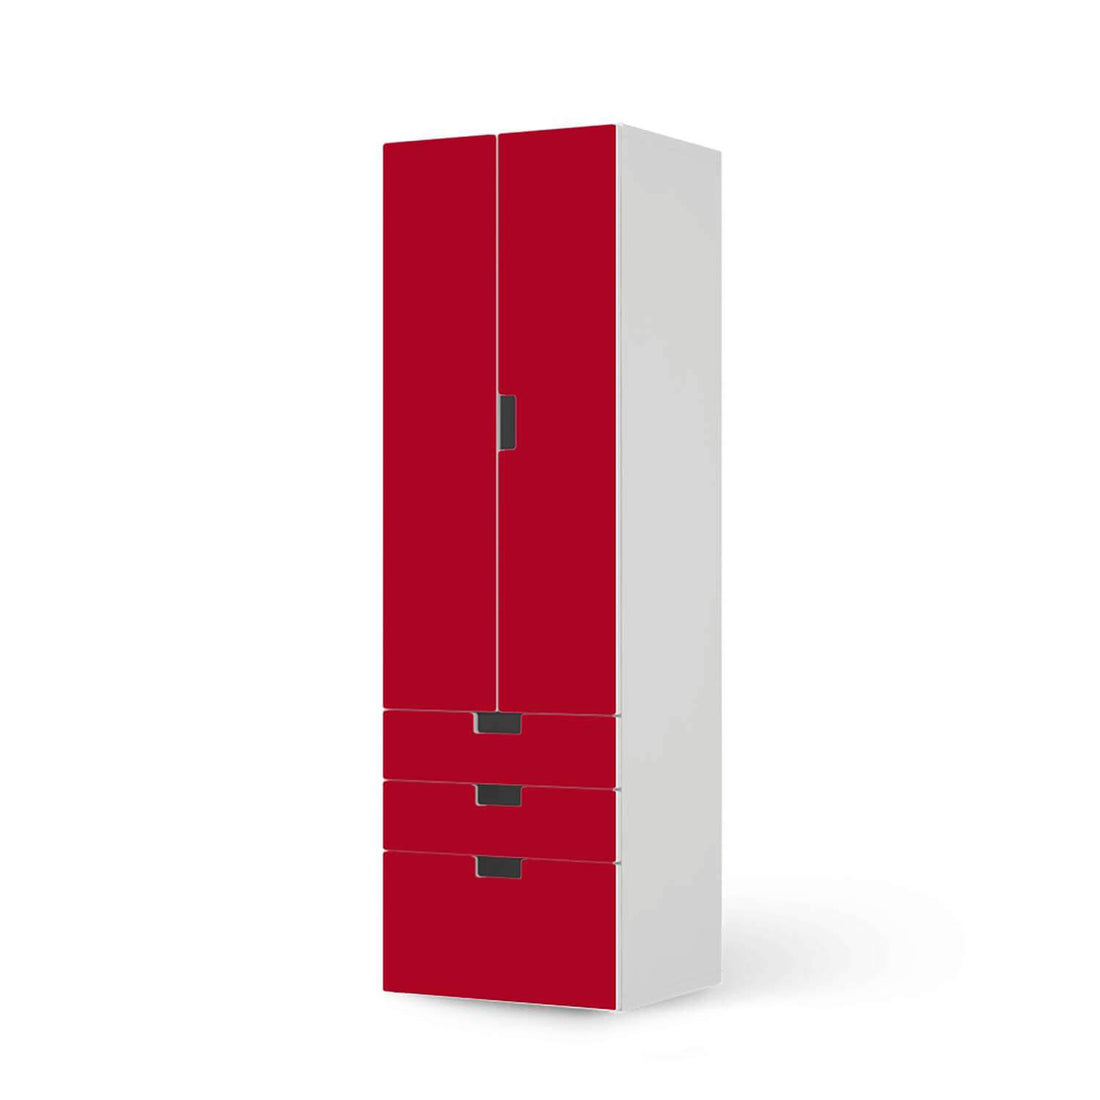 Klebefolie Rot Dark - IKEA Stuva kombiniert - 3 Schubladen und 2 große Türen (Kombination 1)  - weiss